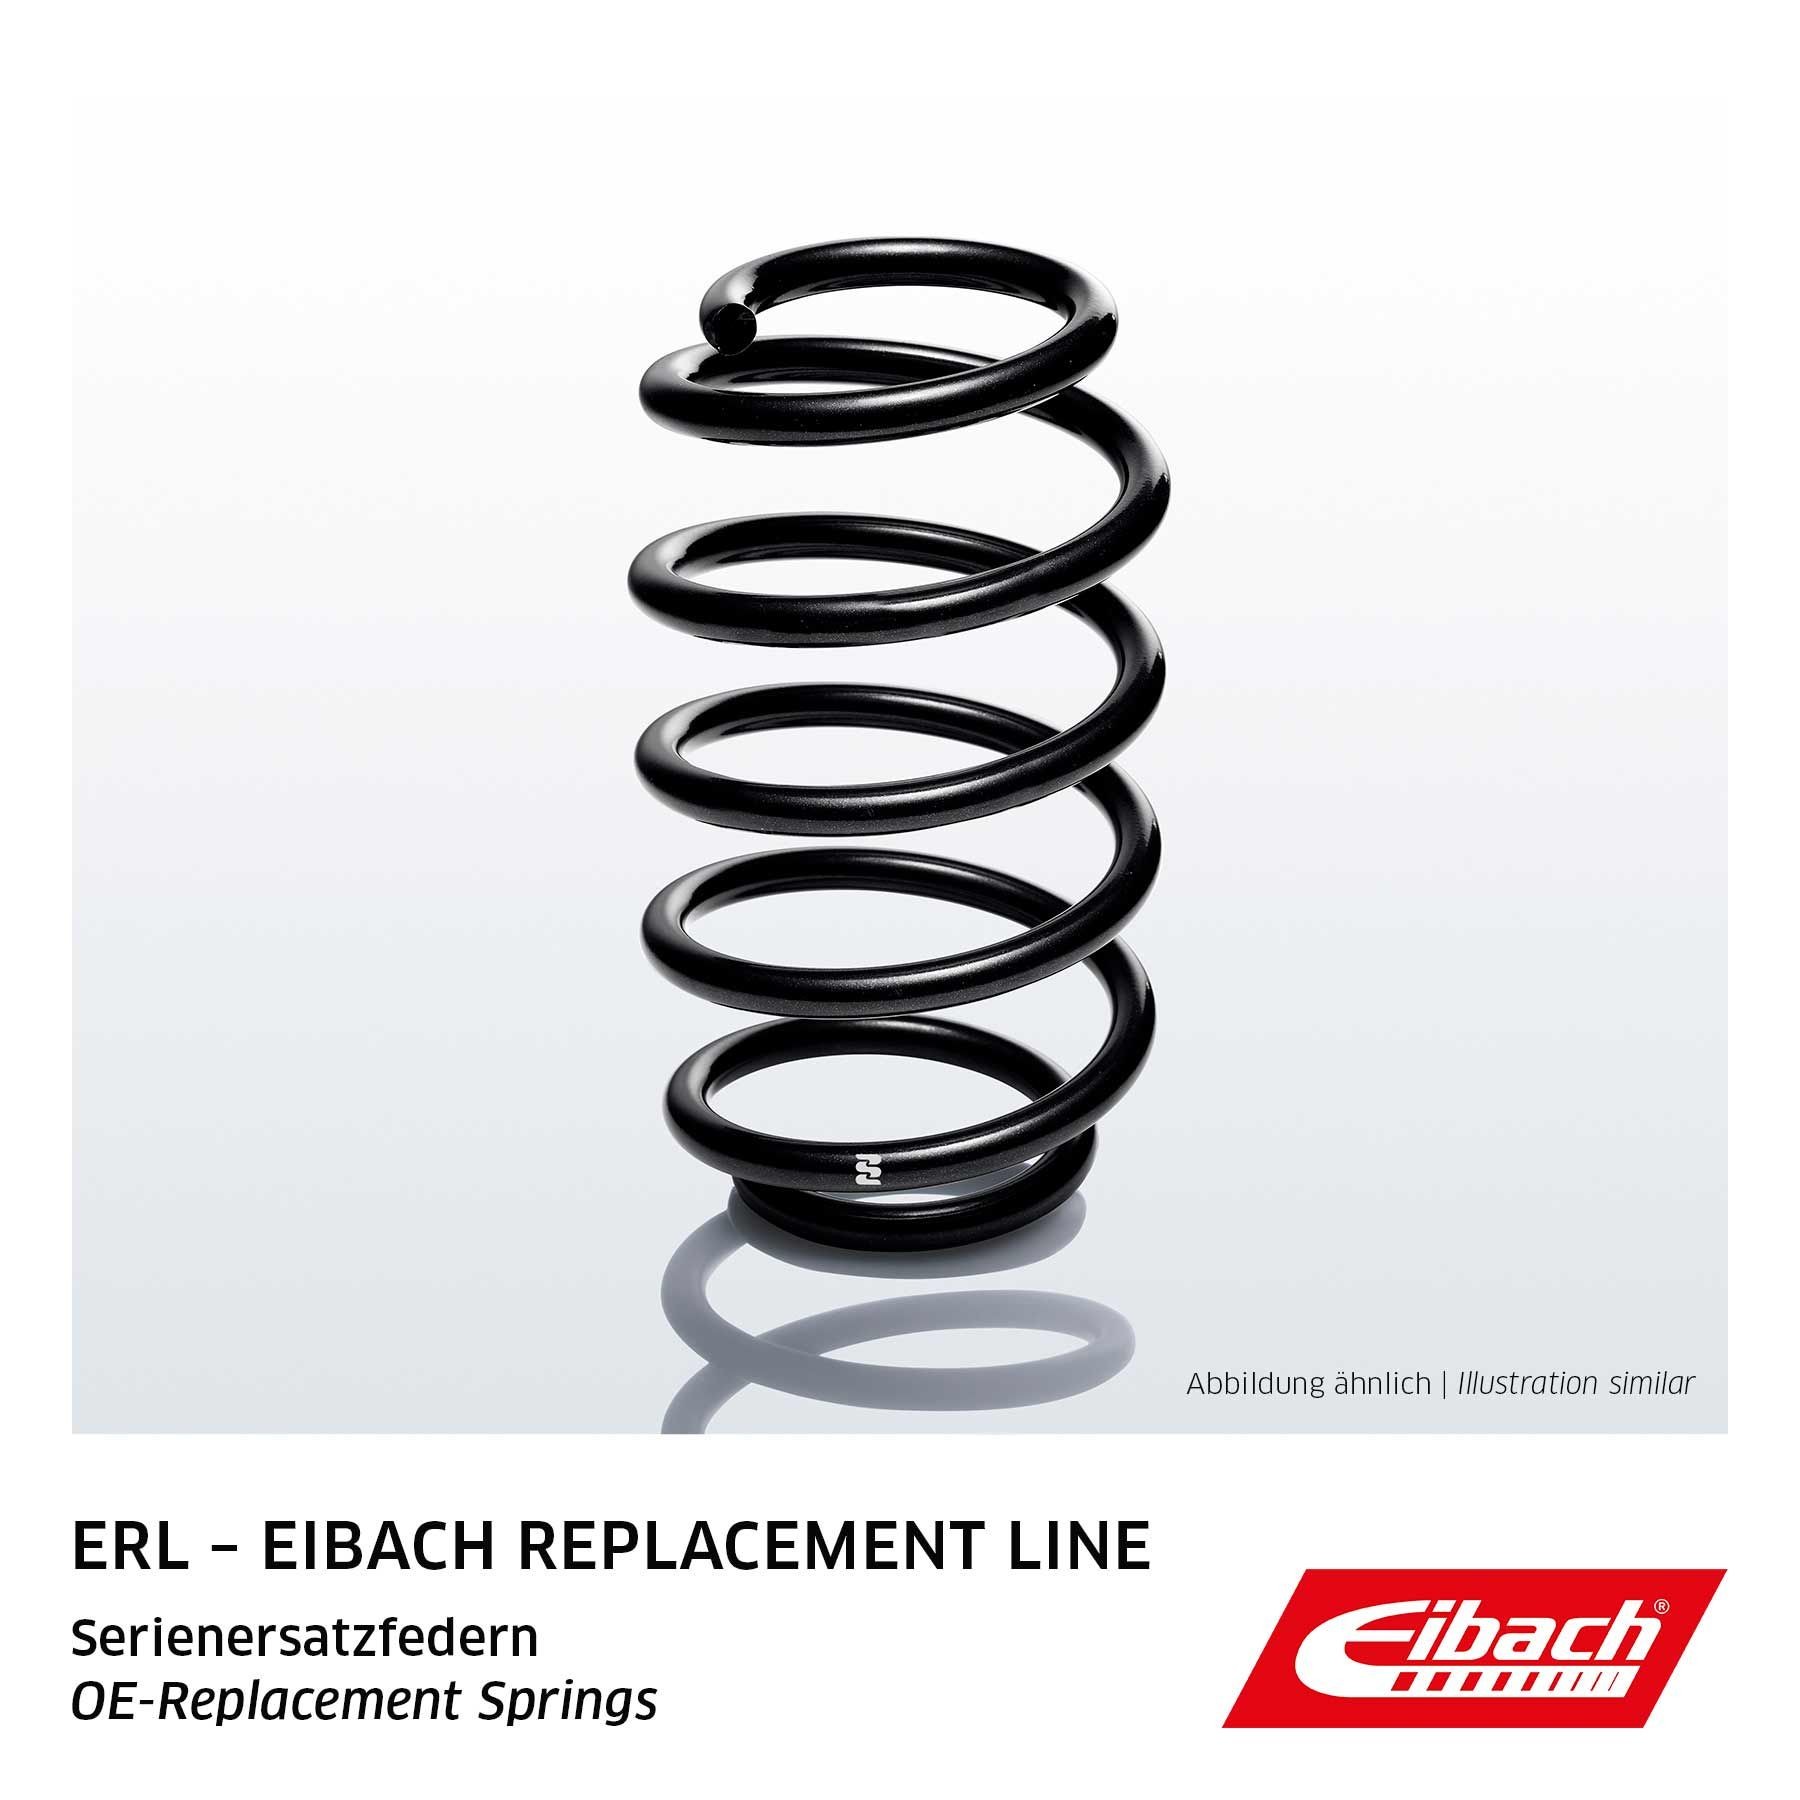 Comprare R10205 EIBACH Single Spring ERL (OE-Replacement) Assale anteriore Lunghezza: 390mm Molle ammortizzatori R10205 poco costoso